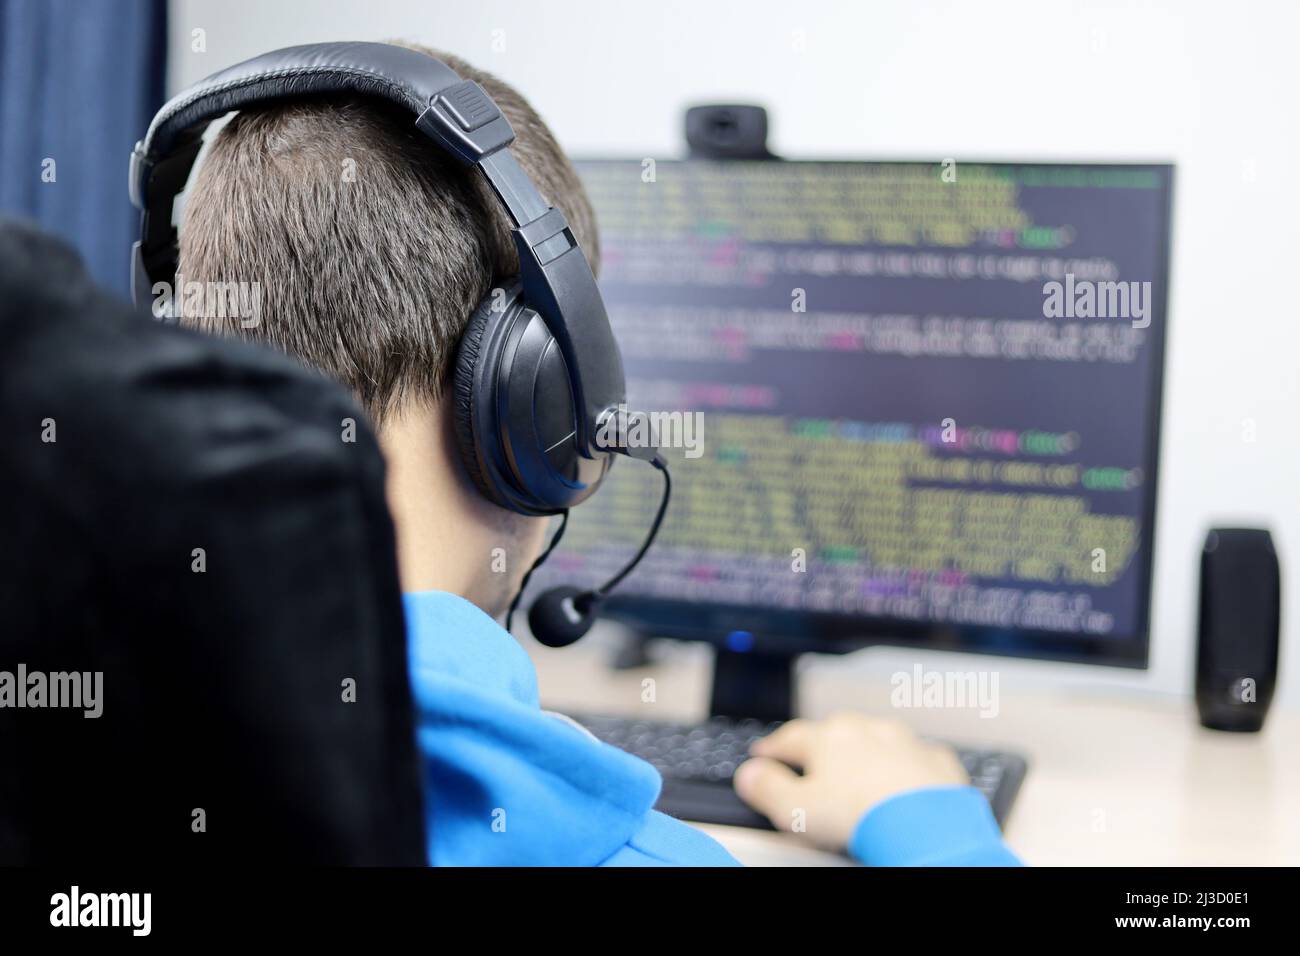 Programmierung, Cyberkriminalität und Hacking. Nicht erkennbarer Typ in Kopfhörern, der am Desktop-PC sitzt und den Standort- oder Anwendungscode auf dem Monitor hat Stockfoto